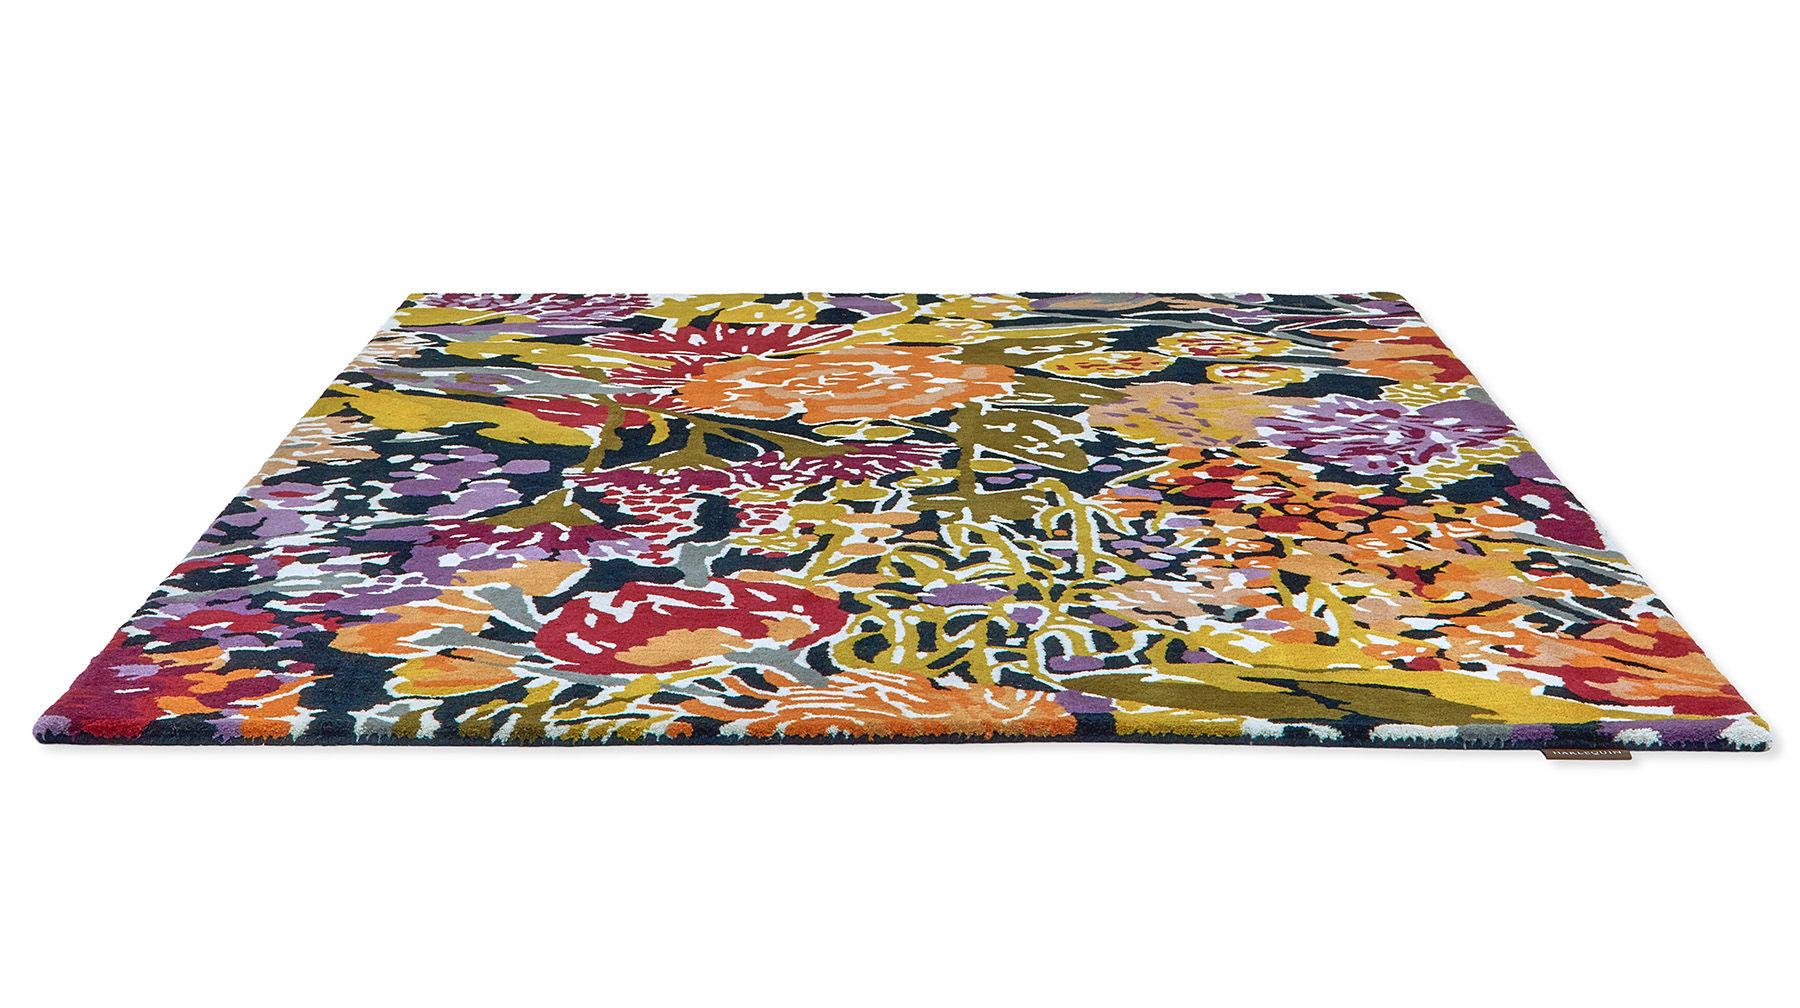 Sanguine Aubergine Rug ☞ Size: 200 x 280 cm